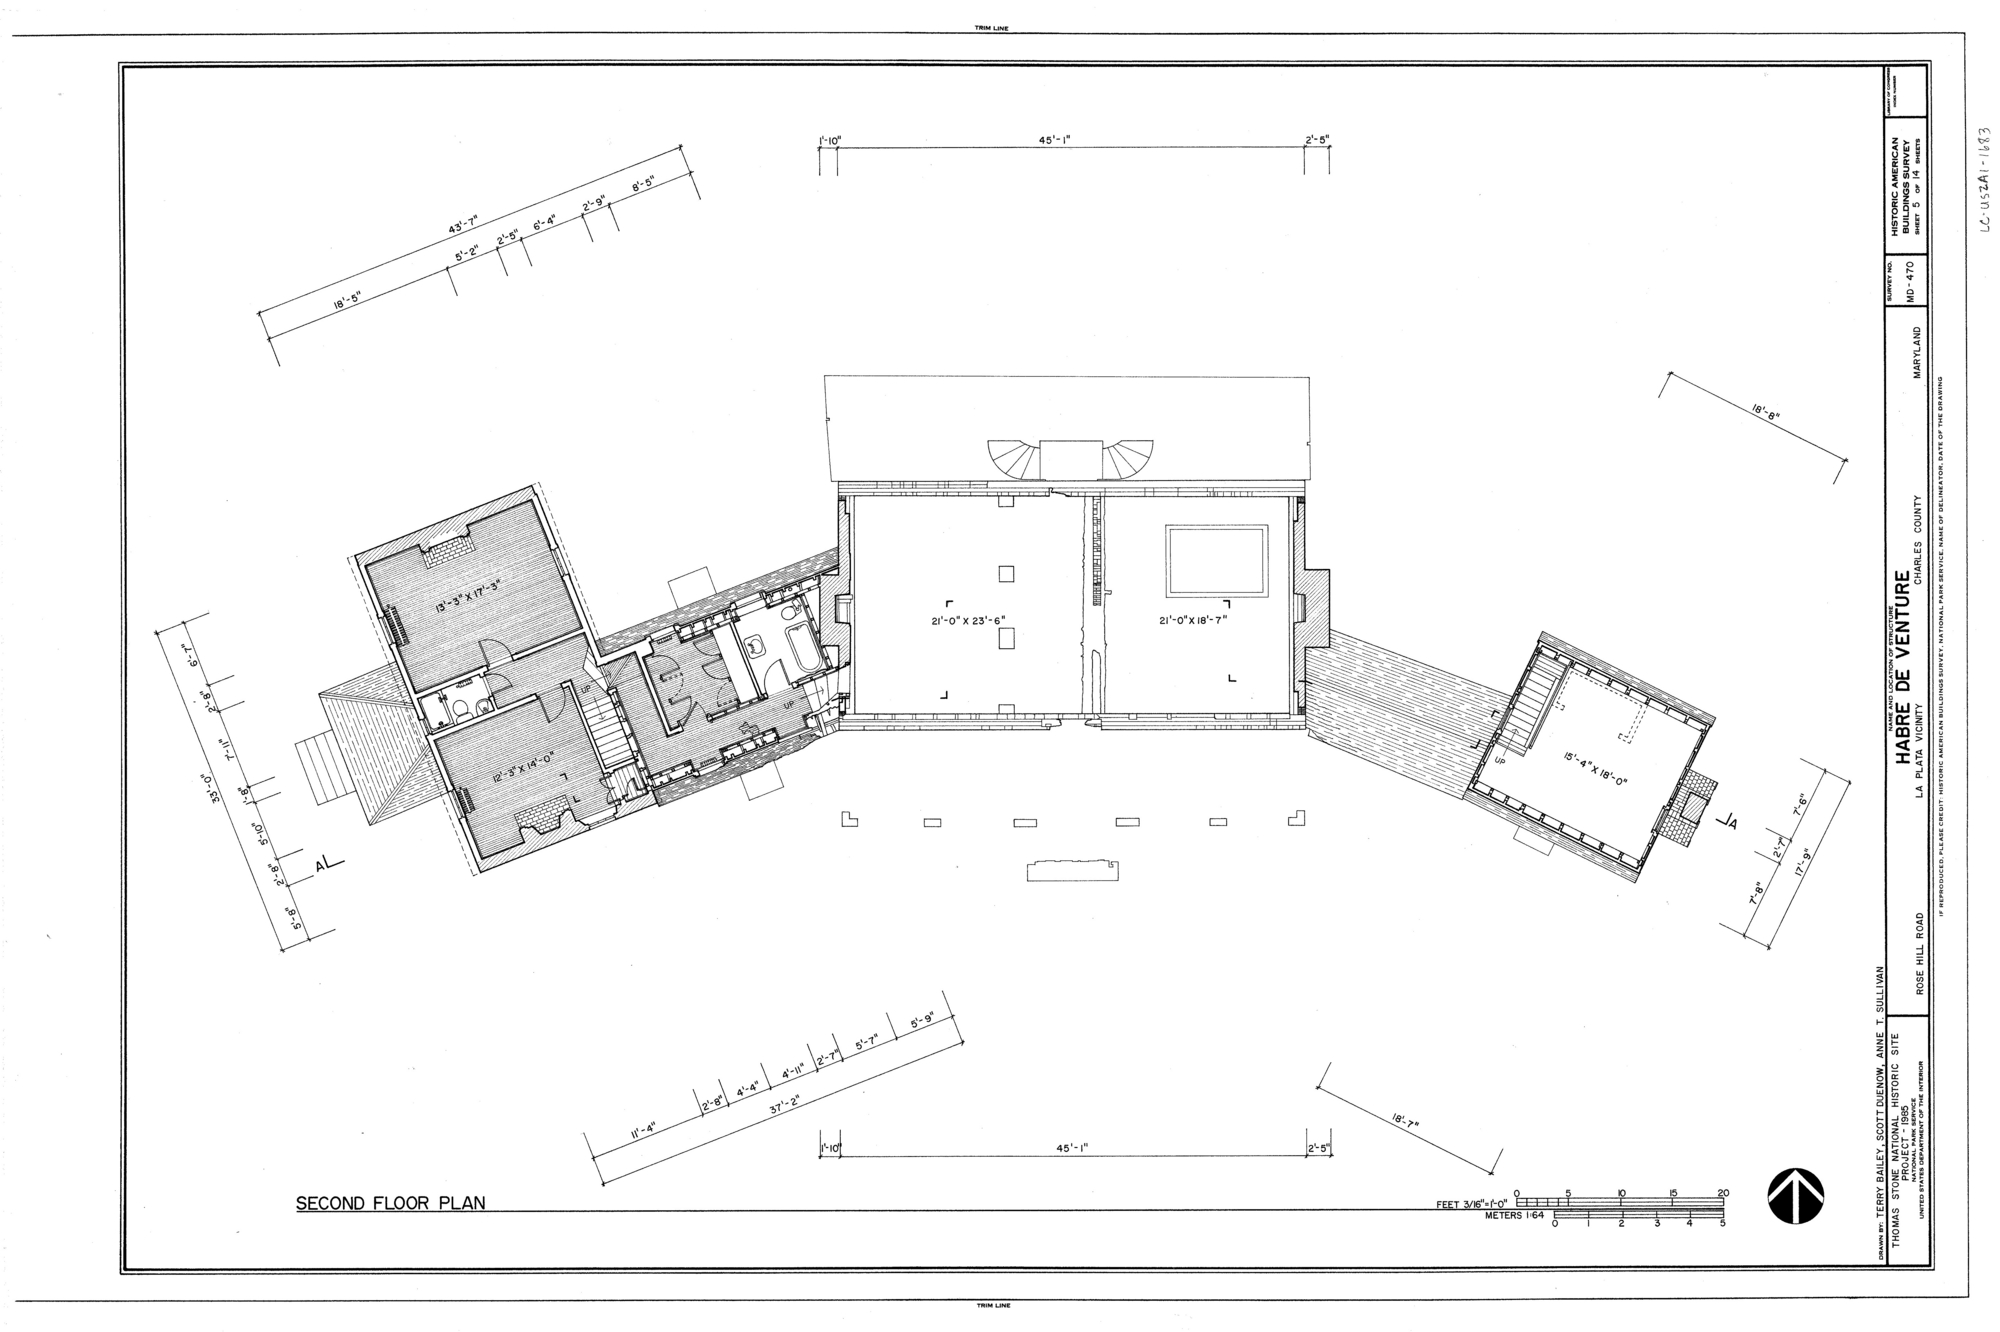 Habre de Venture, Second Floor Plan Drawing